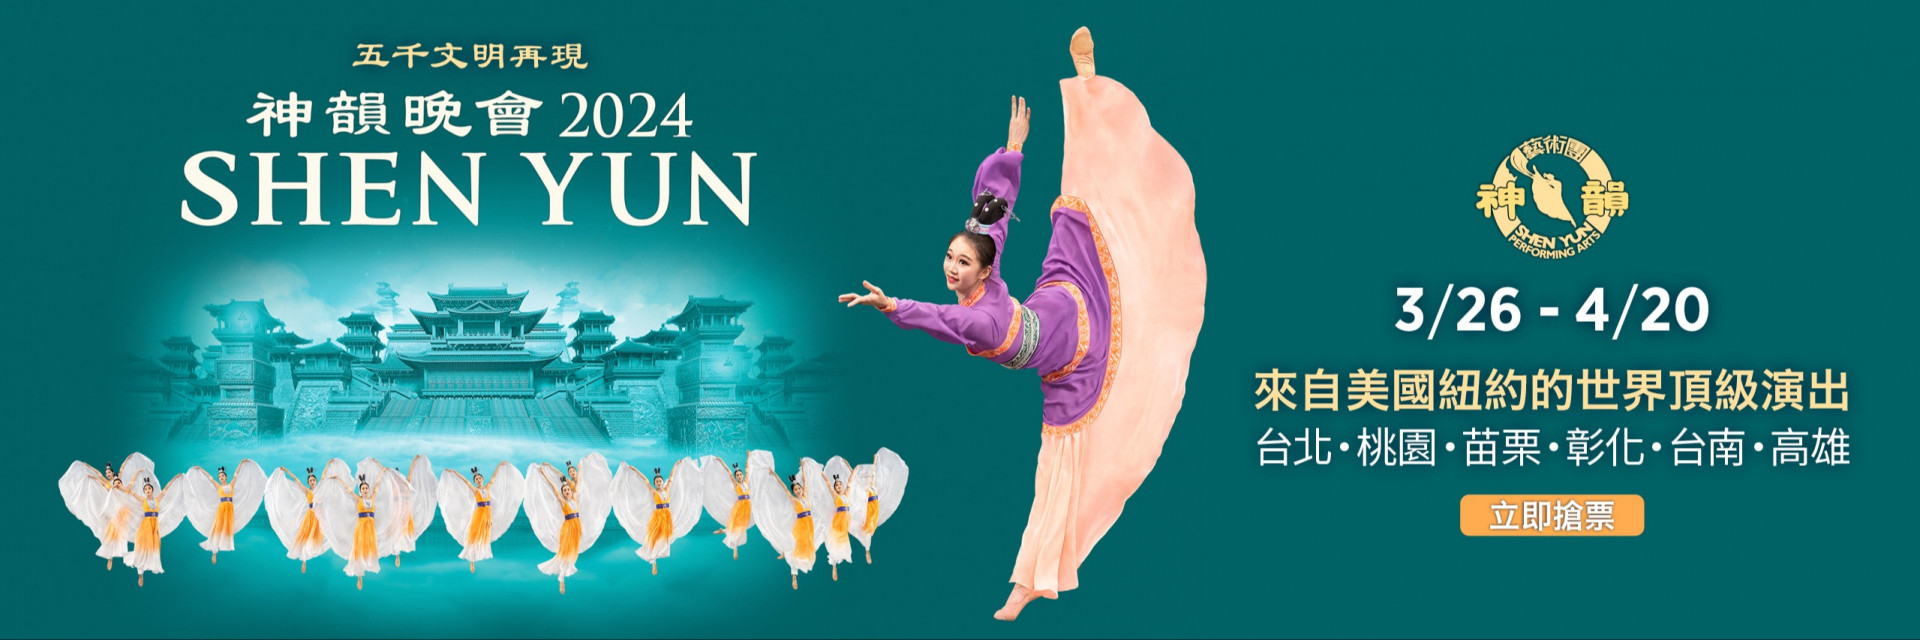 Shen Yun Performing Arts - 2024 Shen Yun in Taiwan 主要圖片